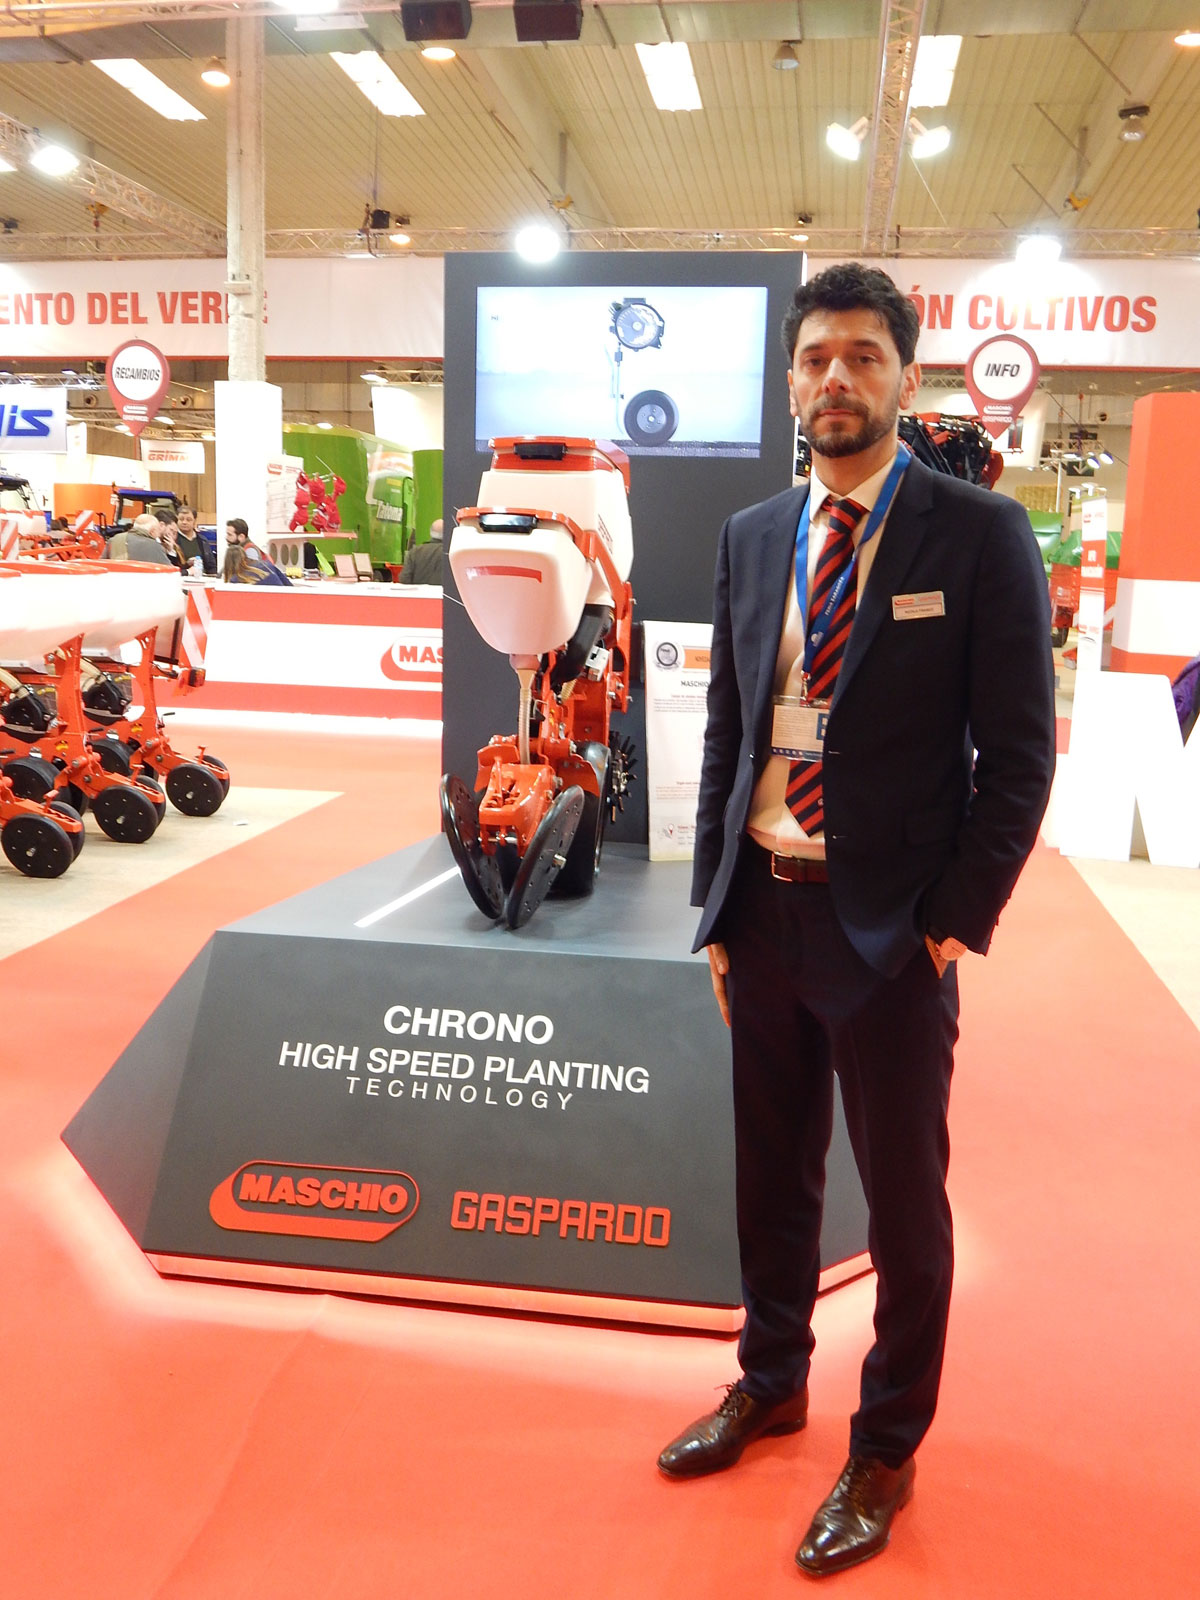 Nicola Franco, director de Maschio Gaspardo Ibrica, junto al cuerpo de siembra monograno Chrono - High Speed Planting Technology...